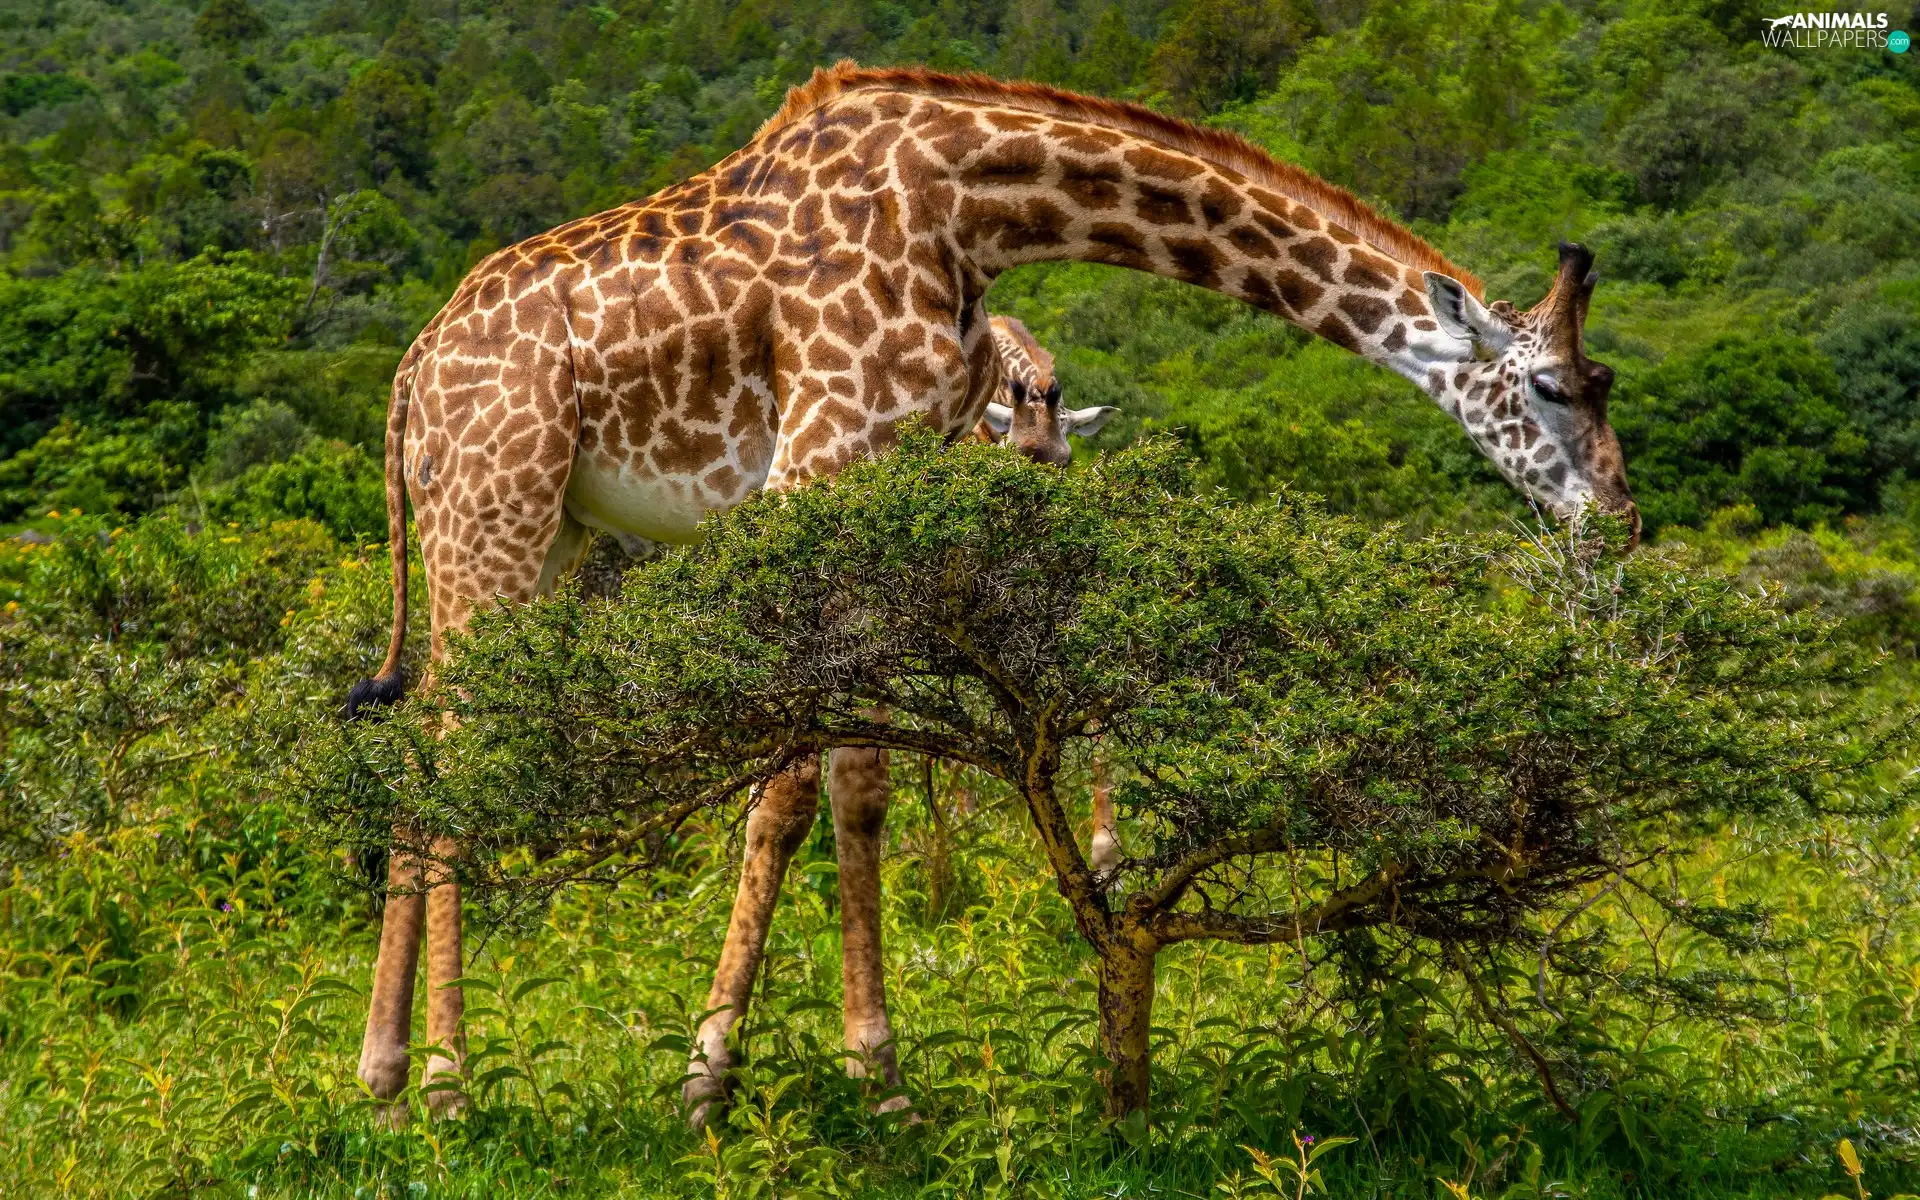 giraffe, viewes, grass, trees